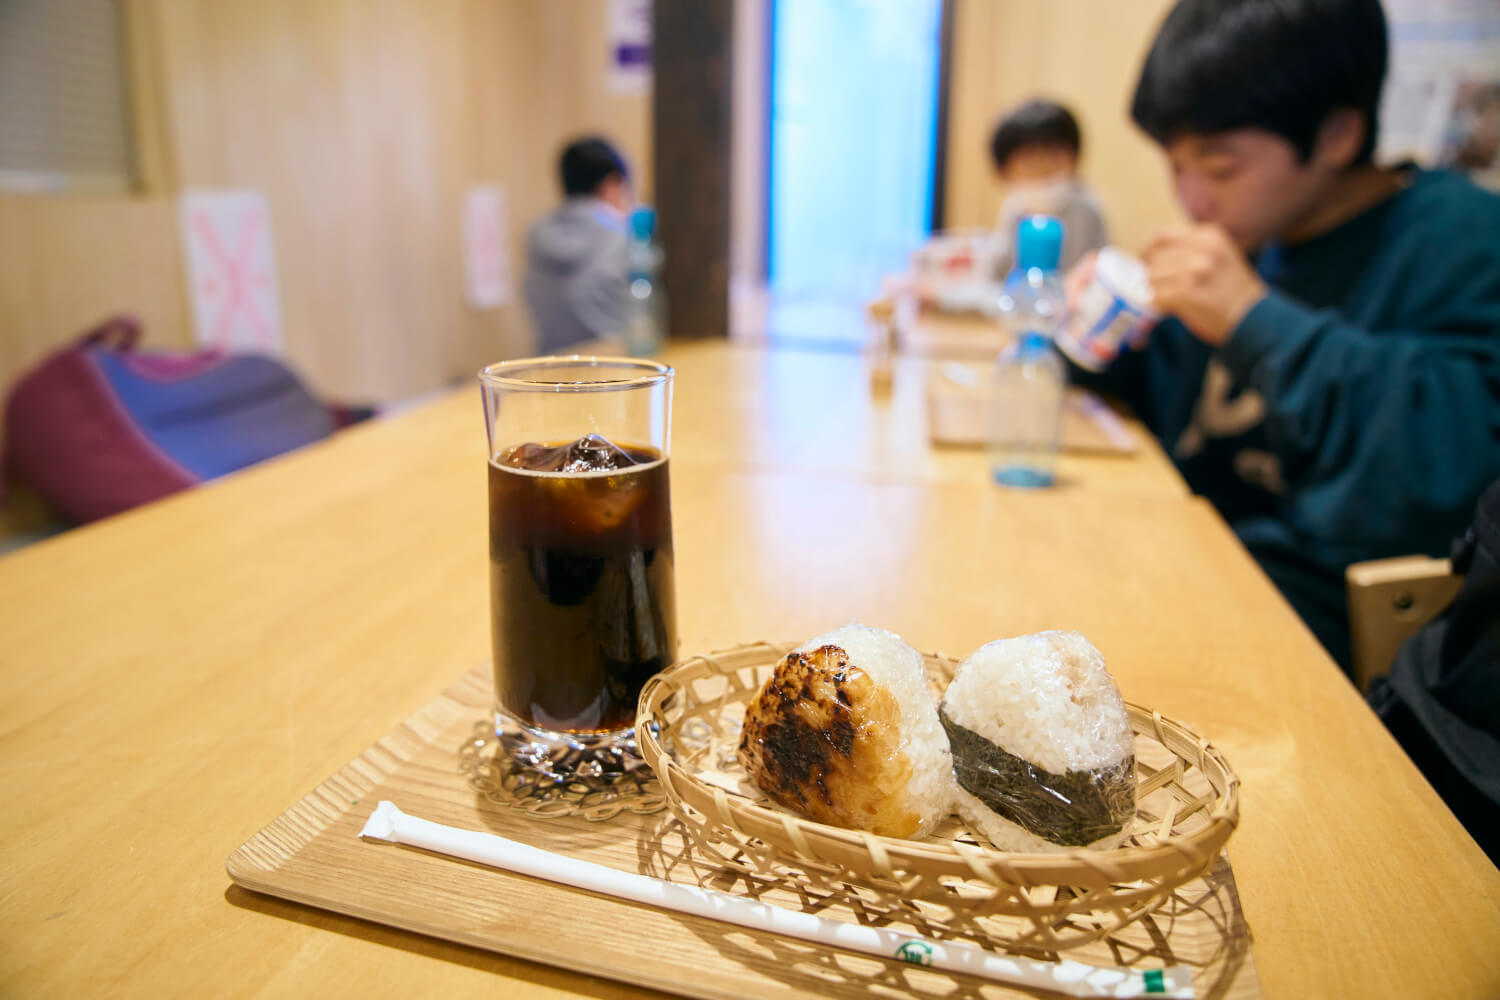 『駄菓子や なかよし・うおよし』の、佐渡米のおにぎりは130円〜。コーヒー300円やジュース250円もあり。